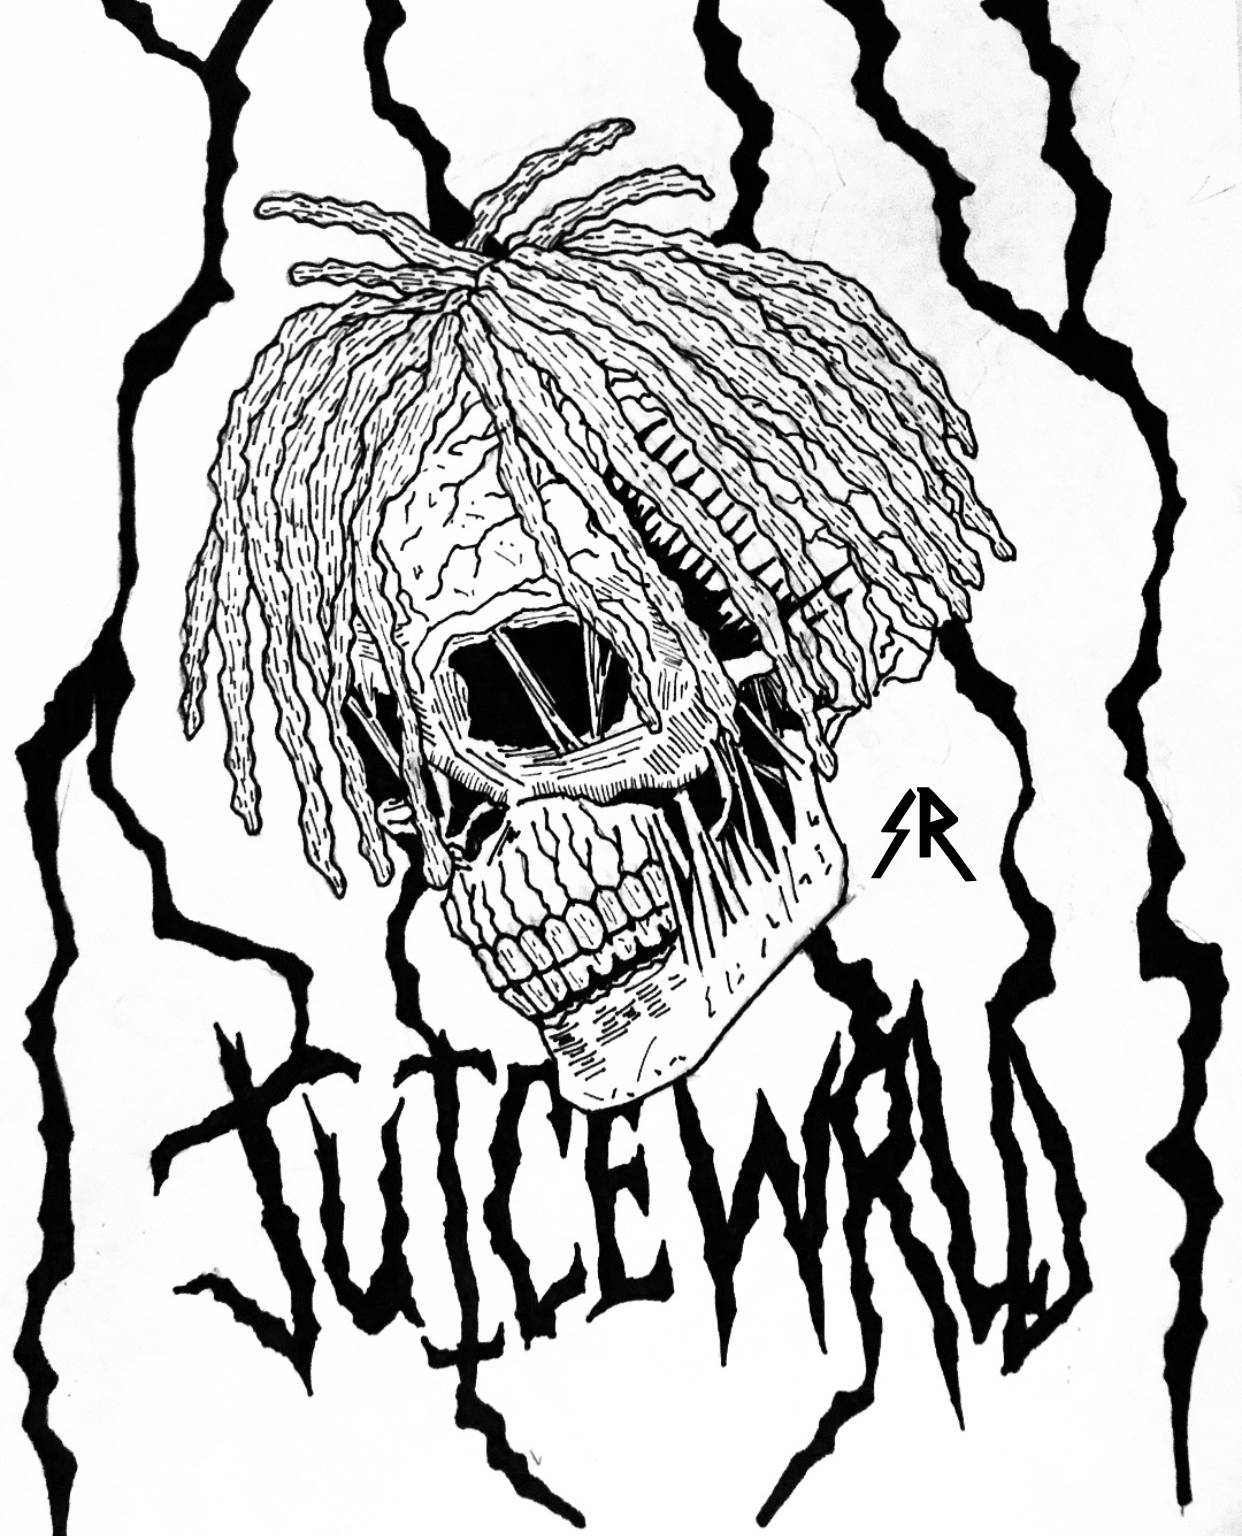 Juice Wrld 999 Skull Logo Wallpaper